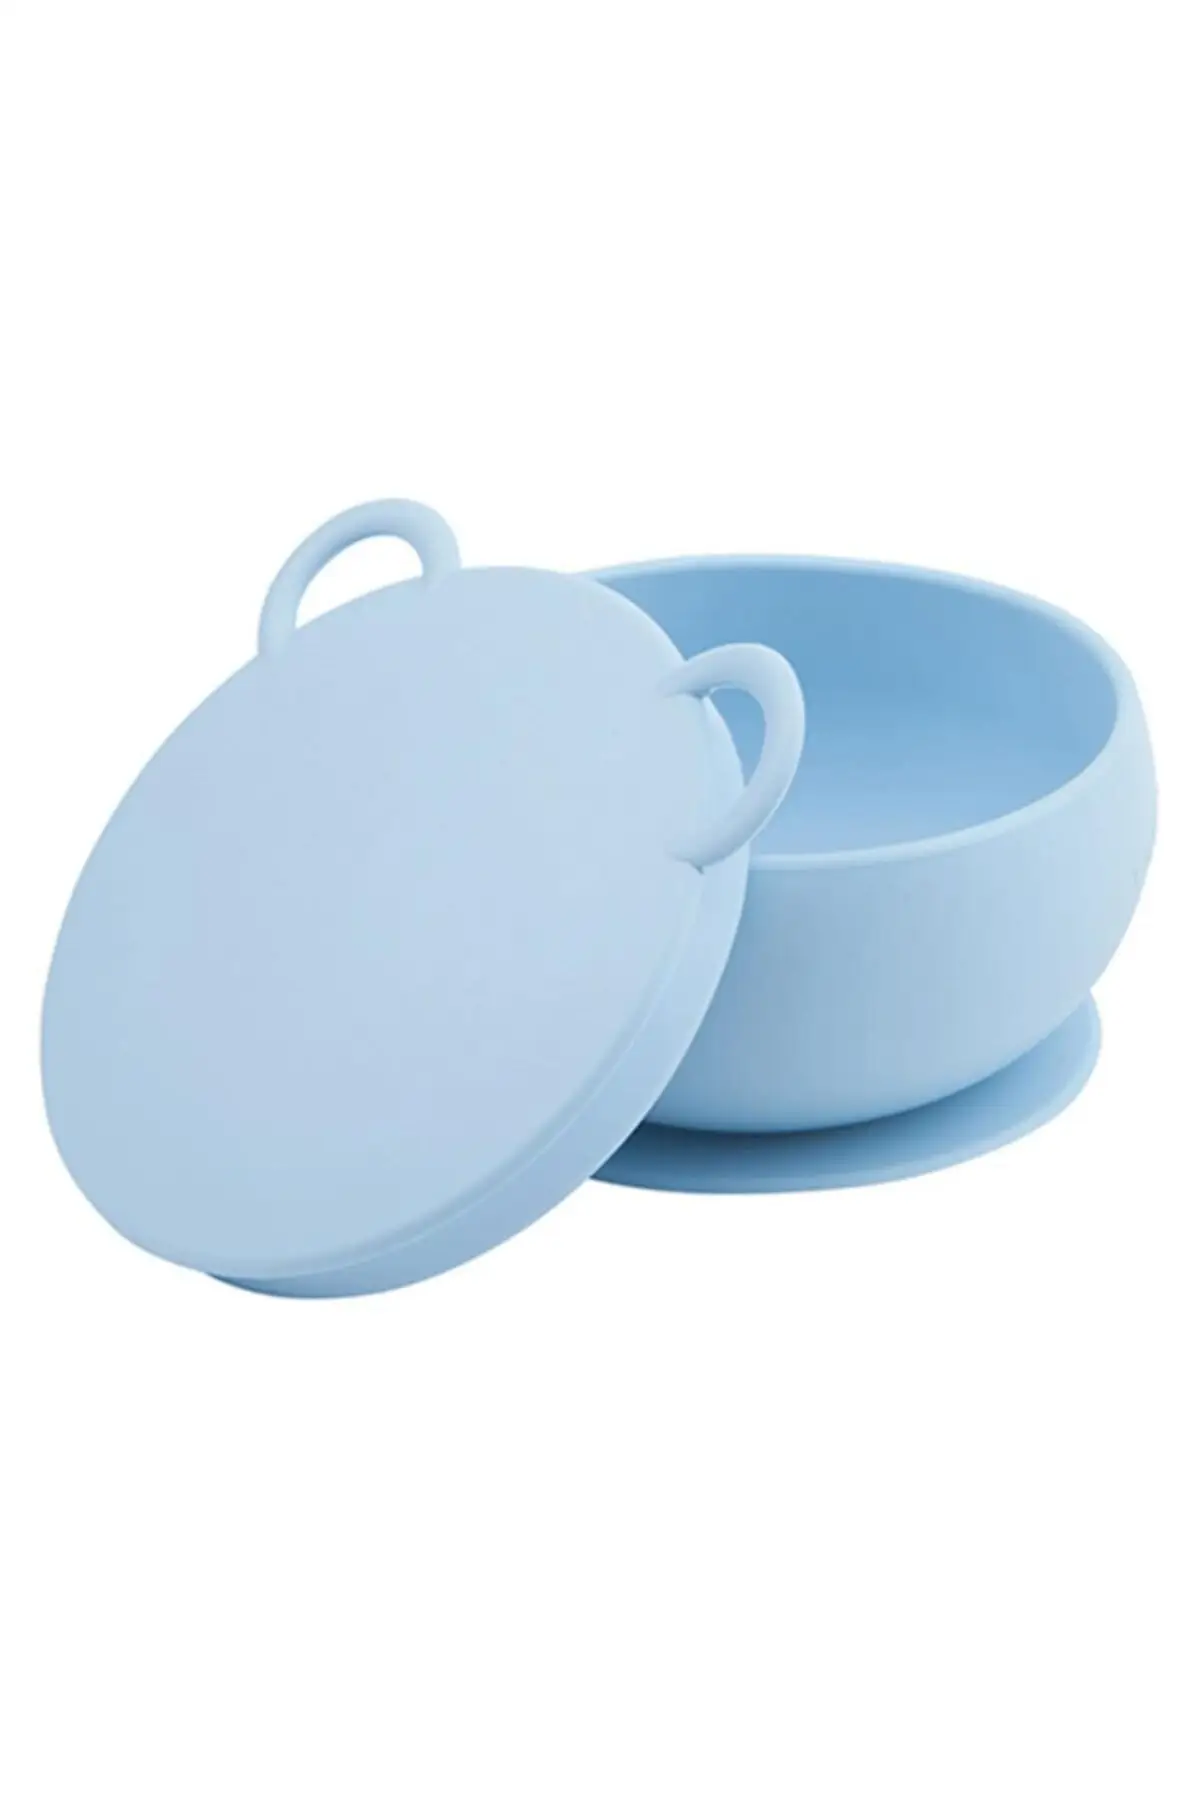 Blue Vacuum Based Silicone Bowl